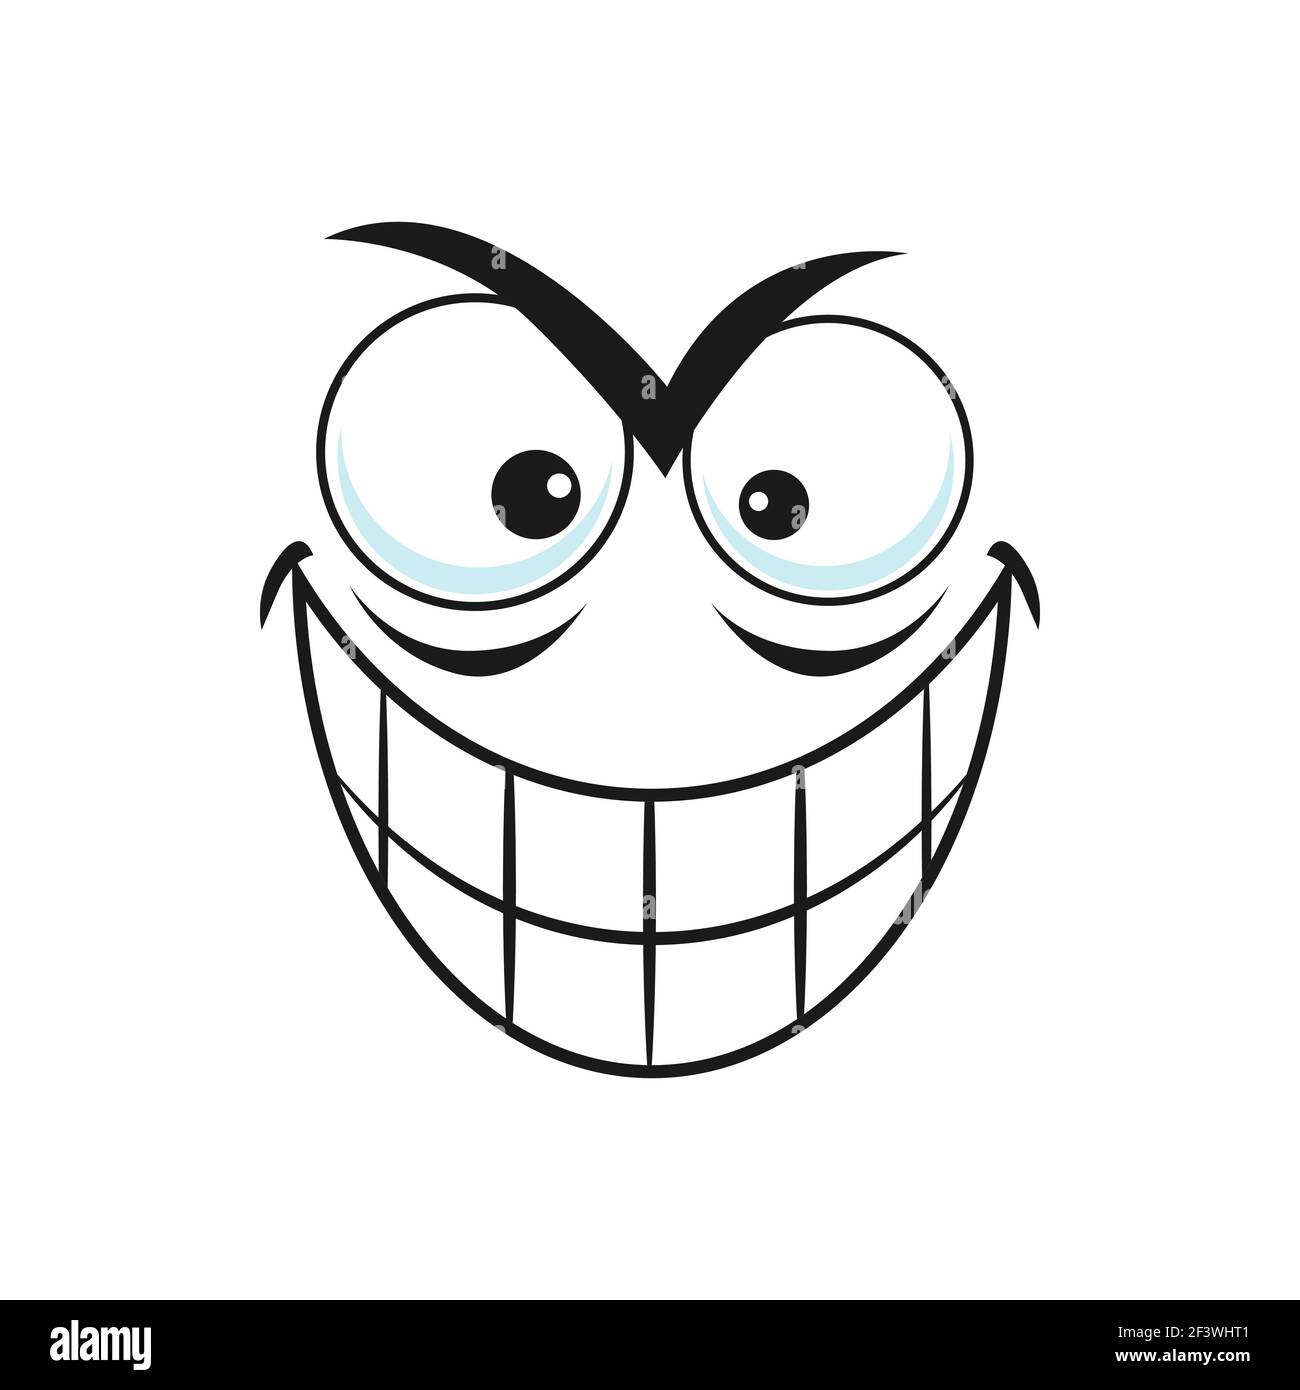 Tückisches Emoticon mit toothy Lächeln isoliert Emoji. Vector niedlich Comic Gesicht Ausdruck mit Emotion des Bösen und Angst. Smiley Dämon, fröhlich insidio Stock Vektor